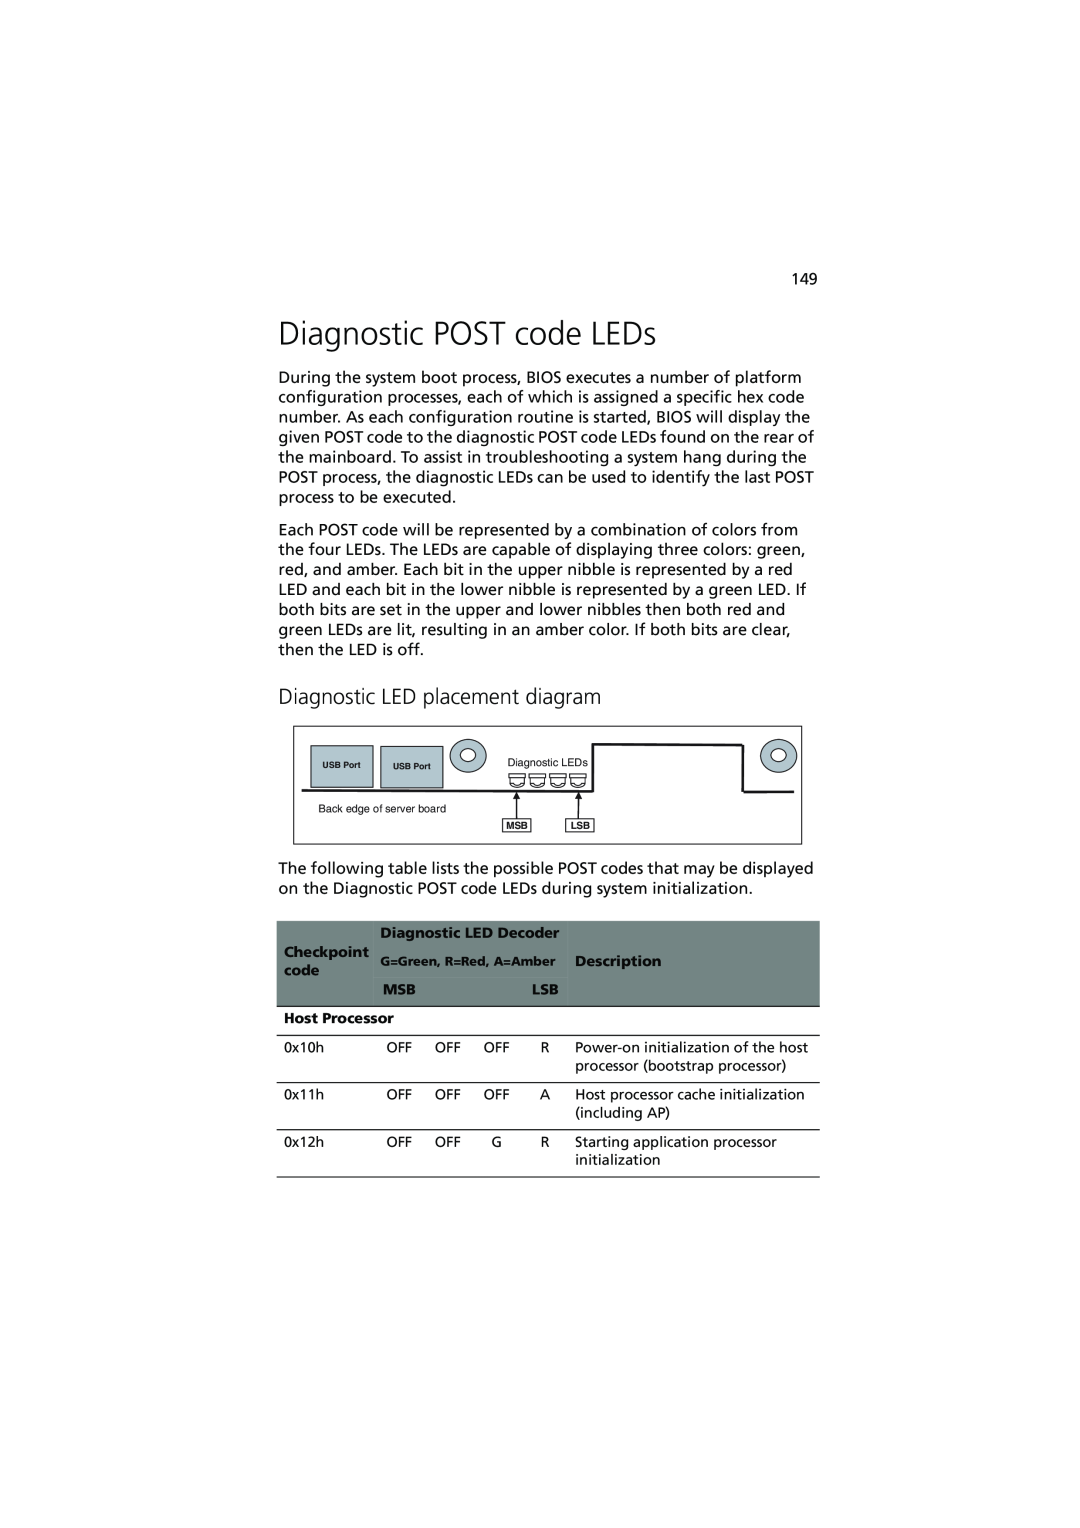 Acer R720 Series manual Diagnostic POST code LEDs, Diagnostic LED placement diagram 